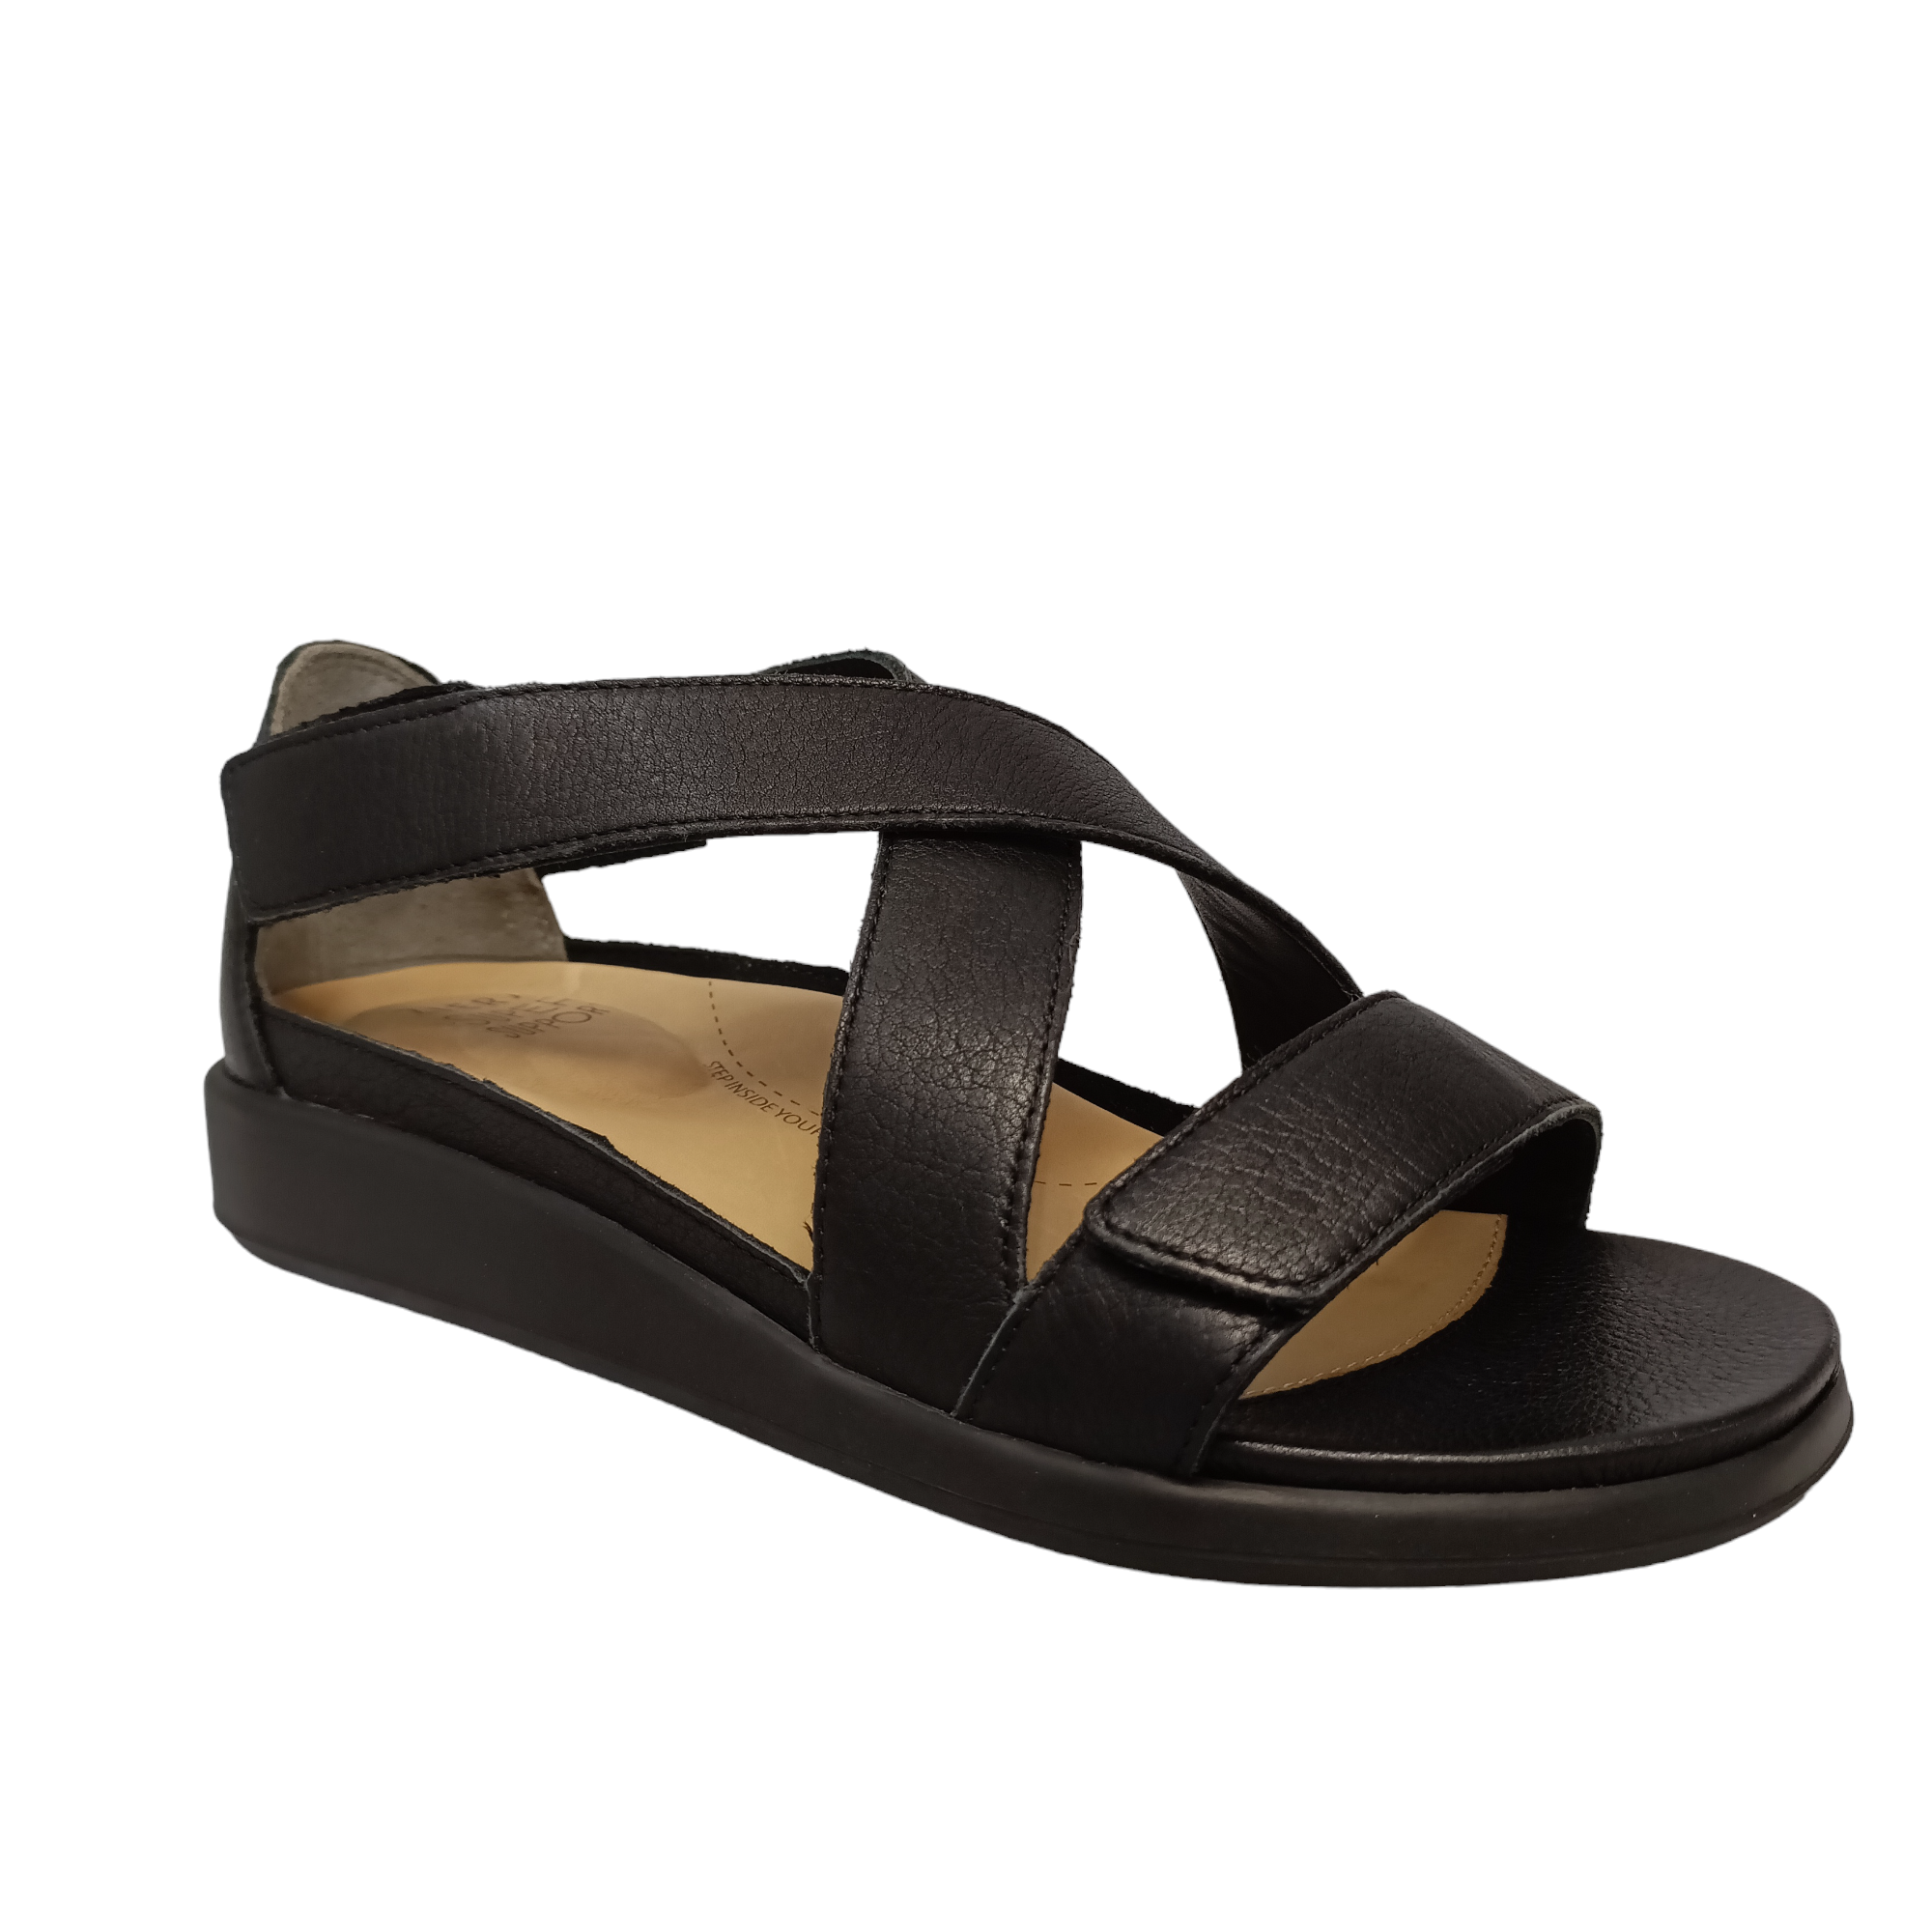 Issy - shoe&me - Ziera - Sandal - Sandal, Summer, Womens